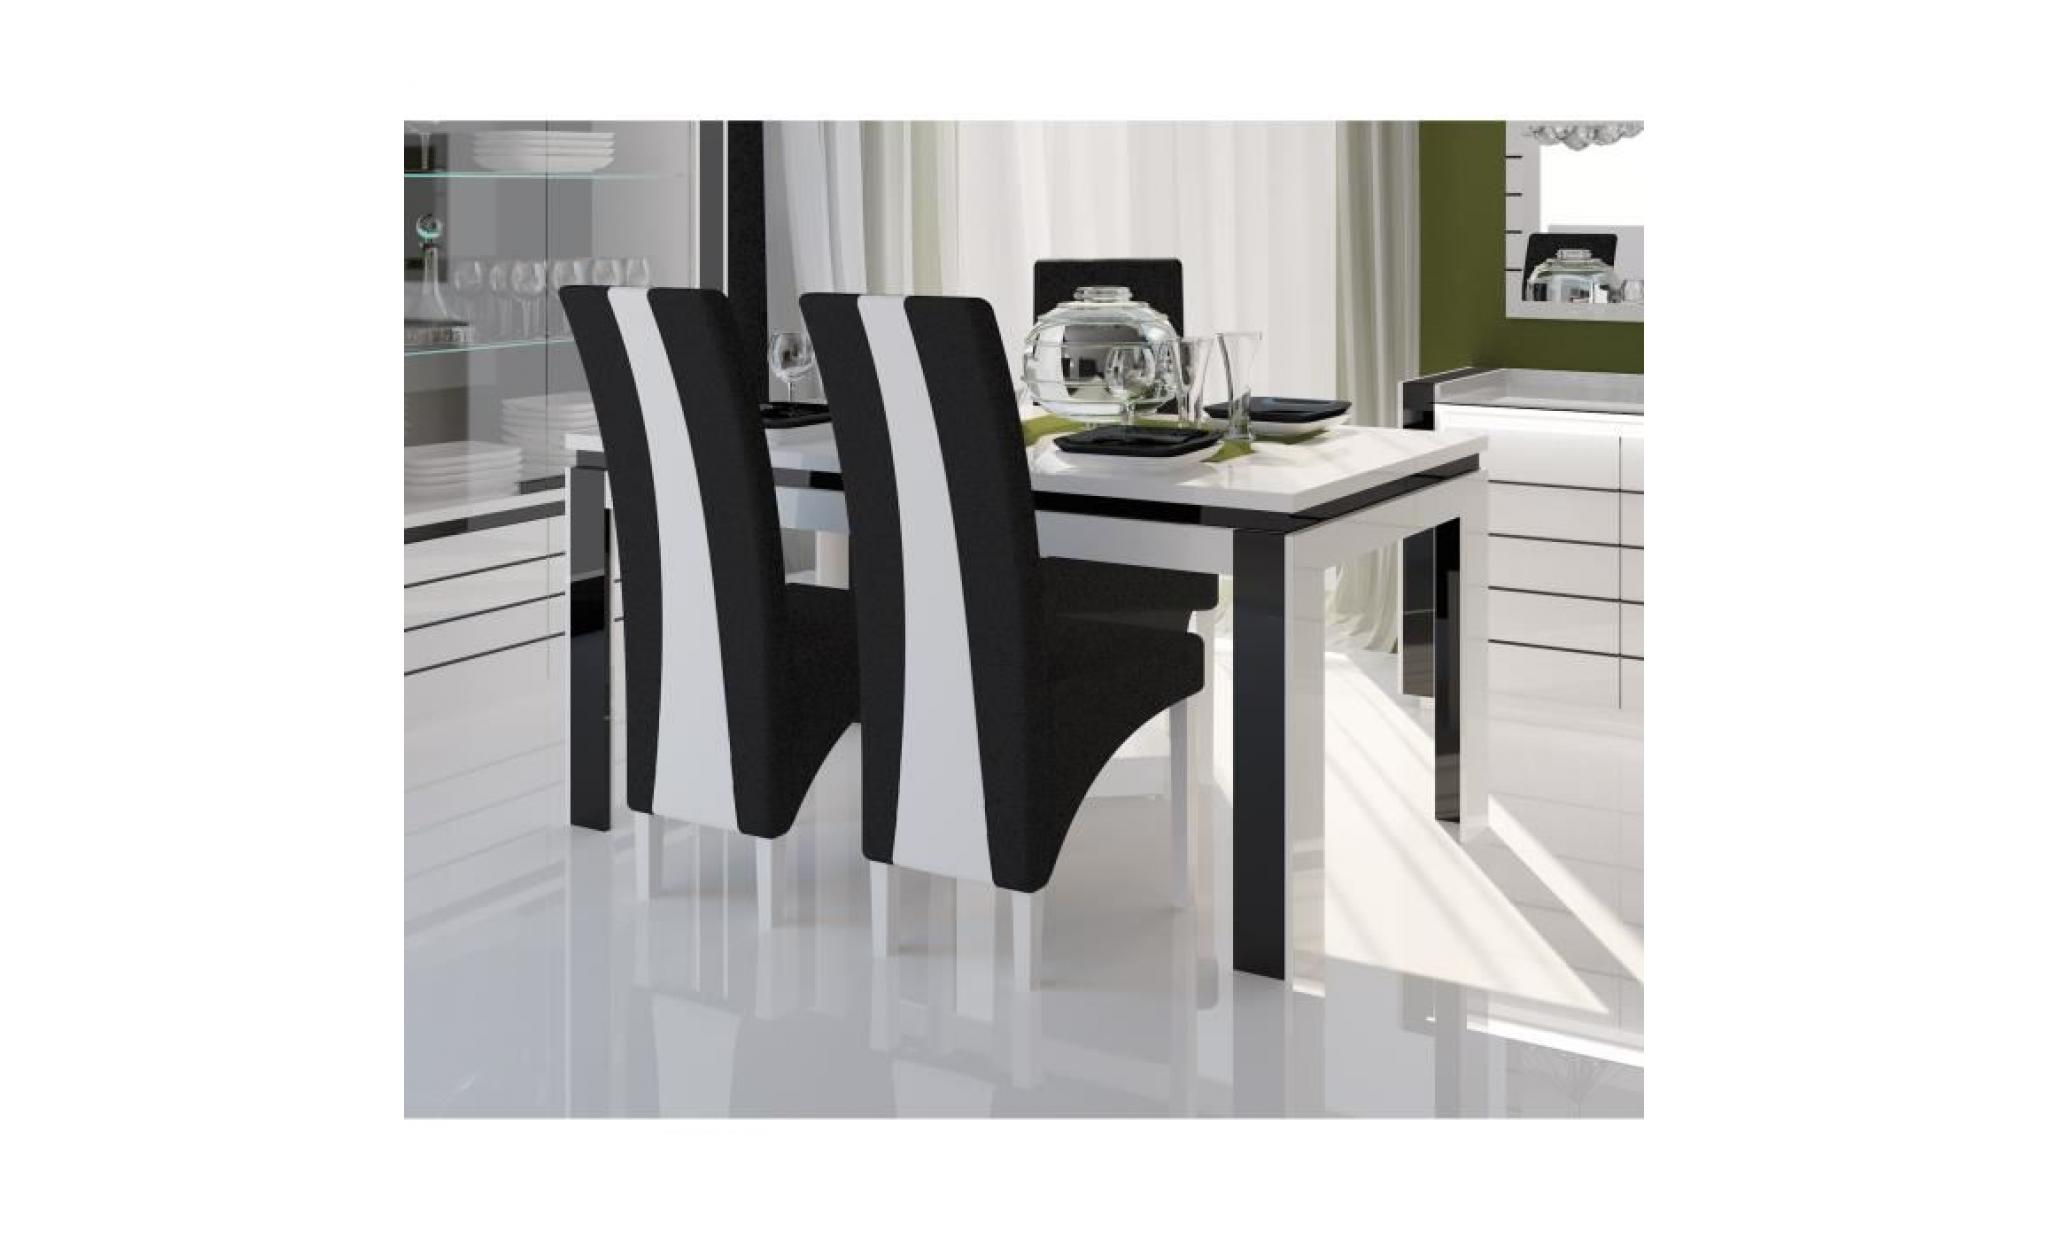 price factory   salle à manger complète lina blanche et noire. table 180 cm + buffet + 3 x miroirs + vaisselier (led) + 6 chaises pas cher